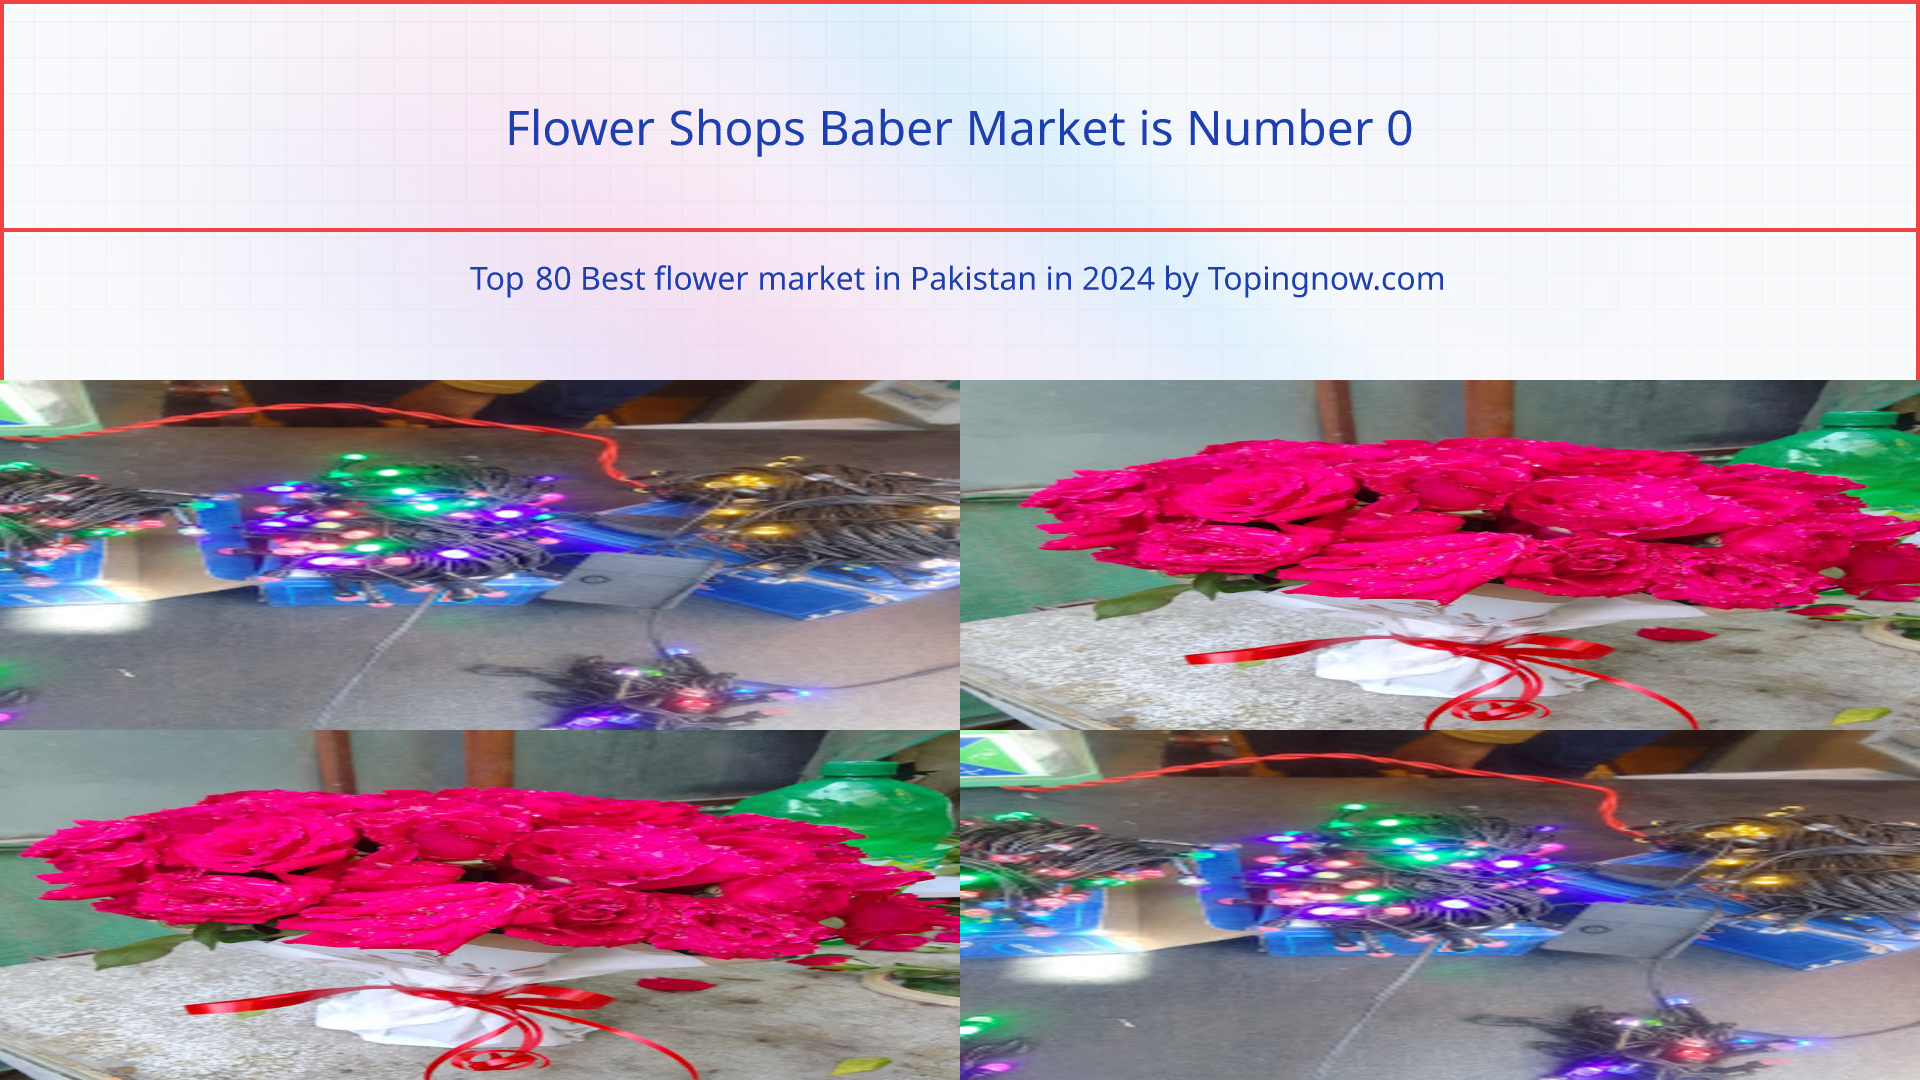 Flower Shops Baber Market: Top 80 Best flower market in Pakistan in 2024